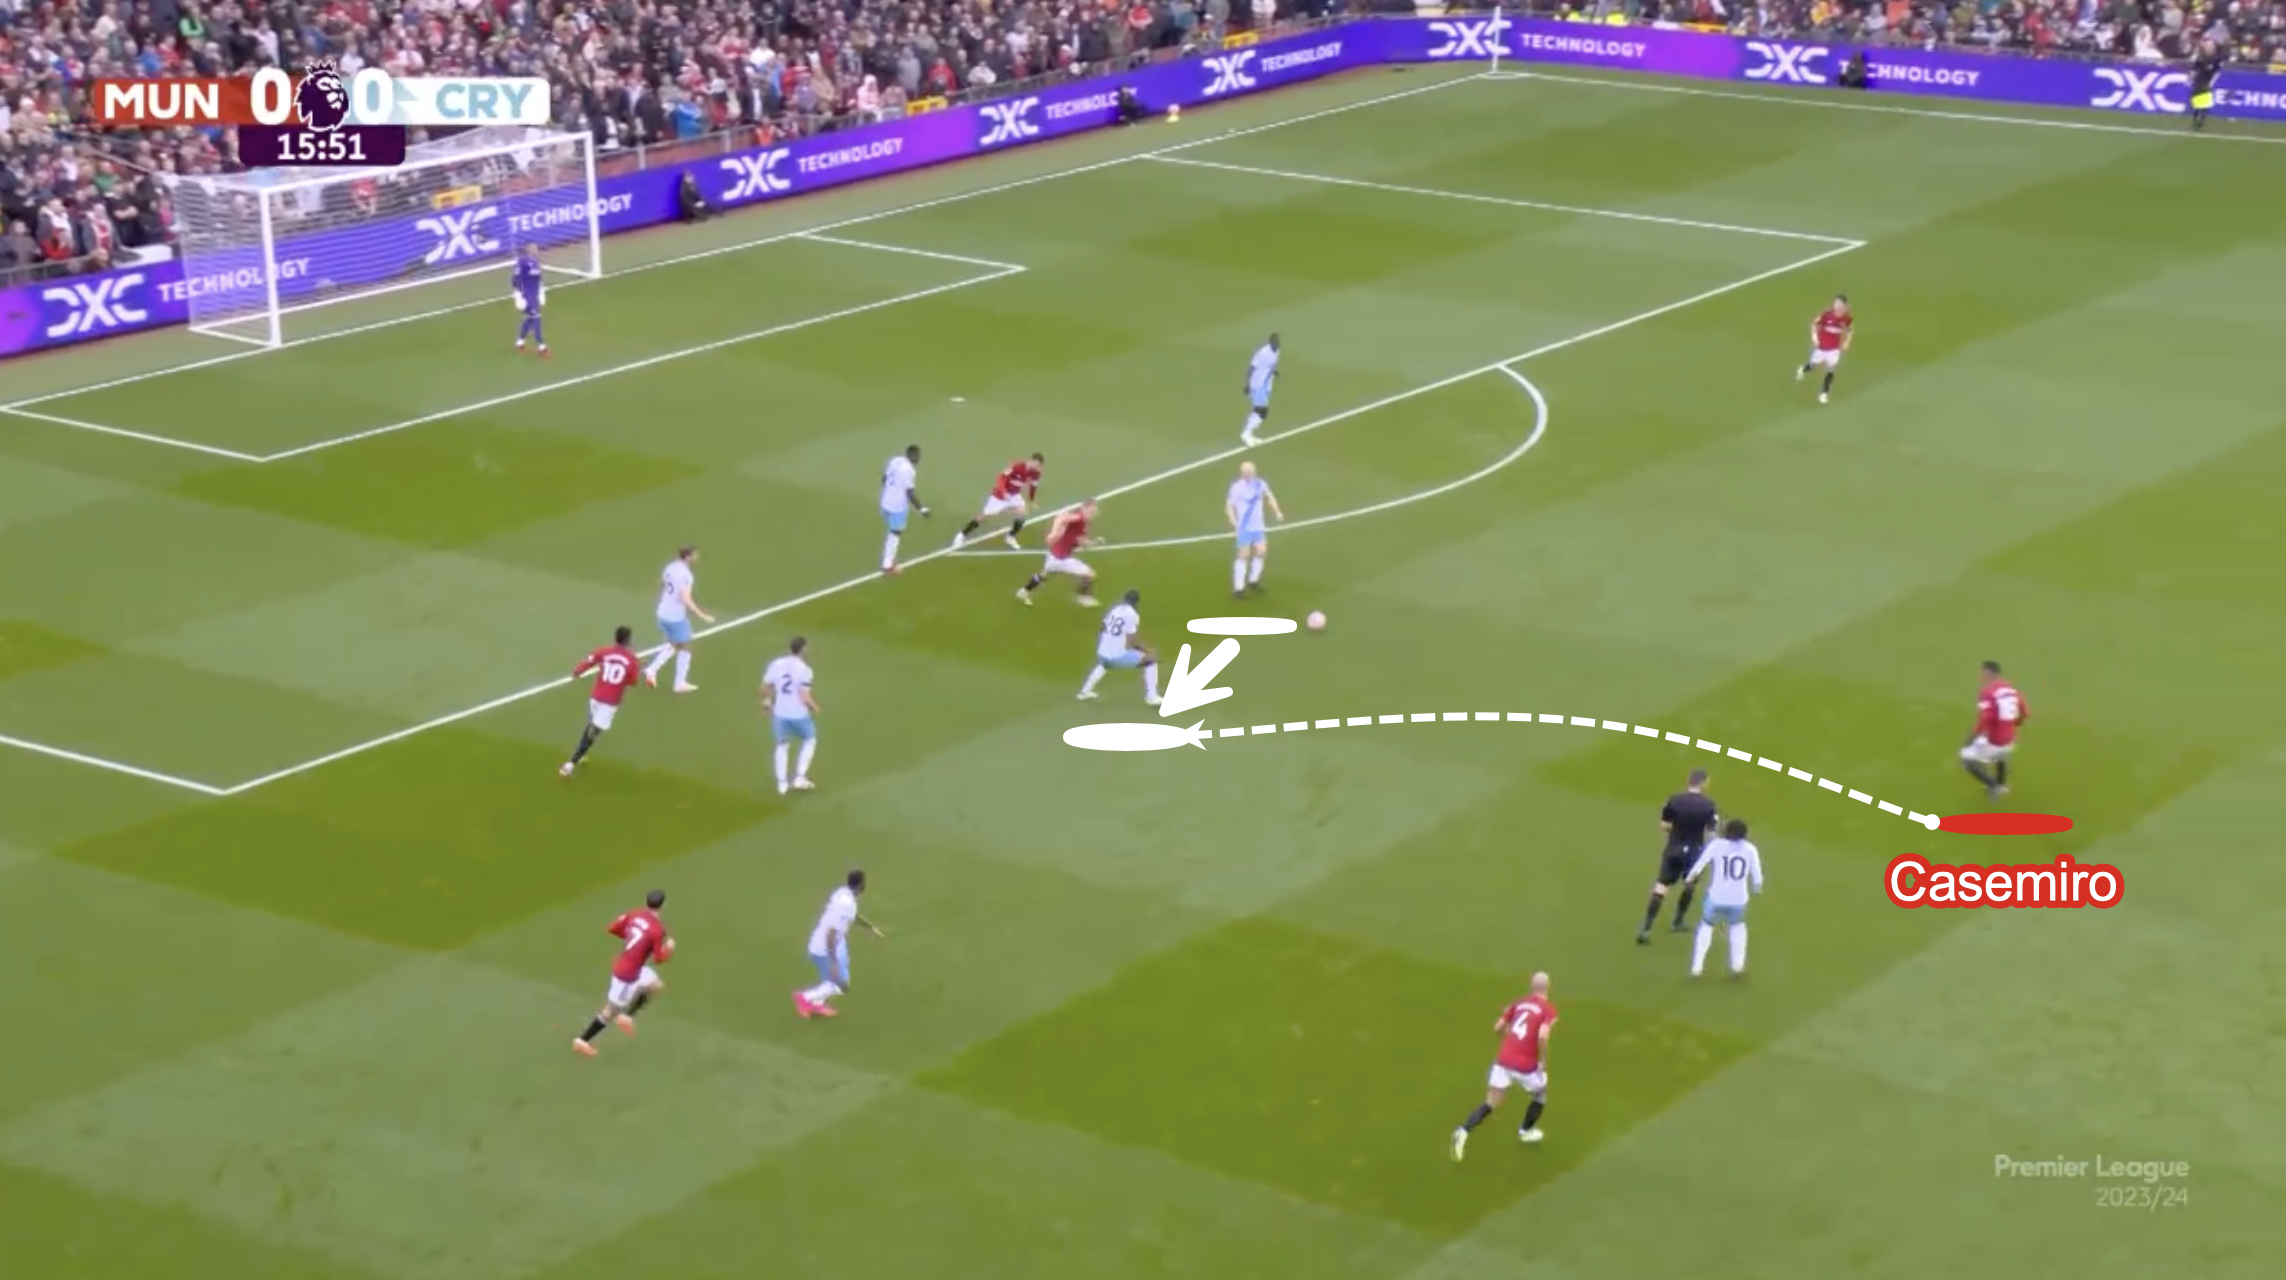 Als der Angriff von United gegen Crystal Palace scheiterte und die Gäste versuchten, den Ball herauszuholen, sprang Casemiro hoch, um Druck auszuüben